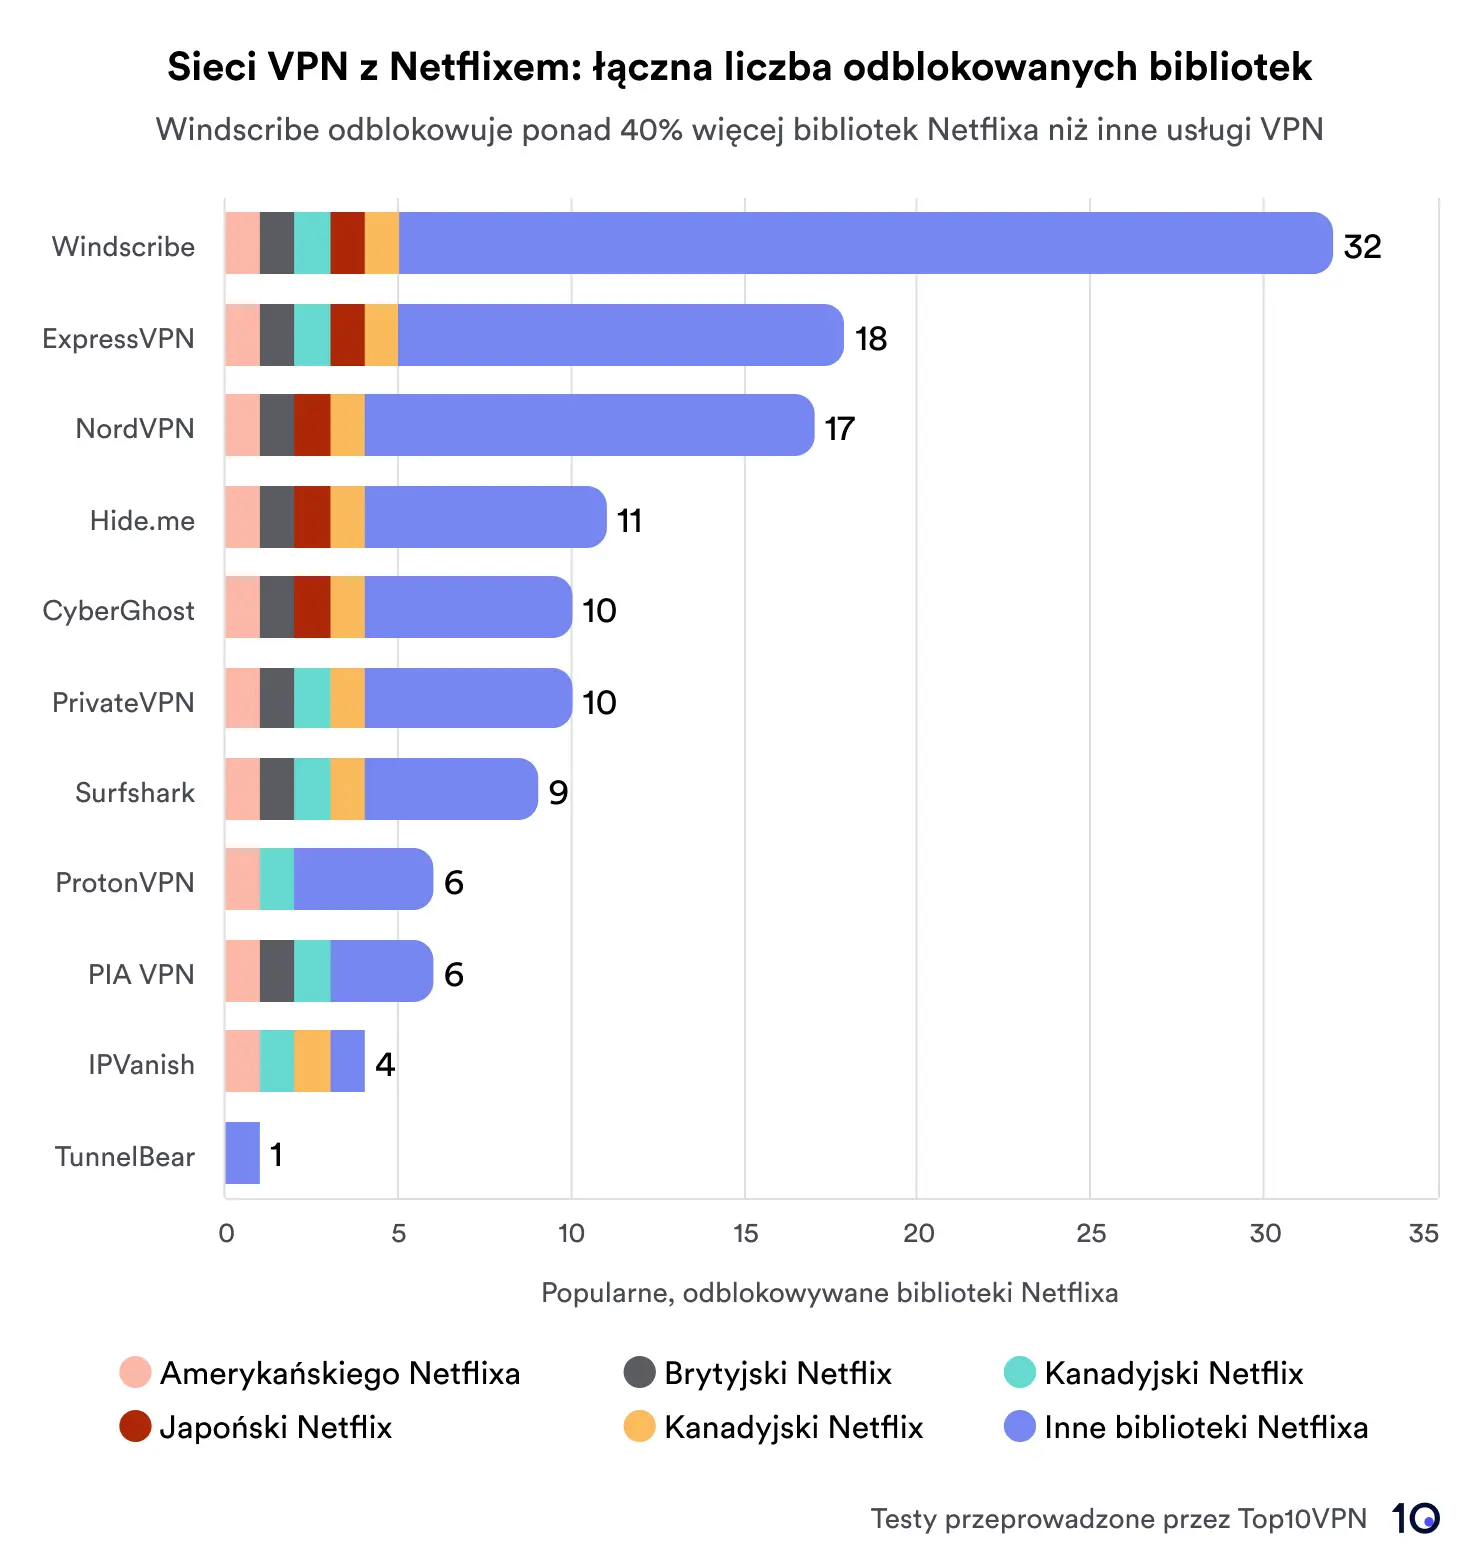 Wykres słupkowy porównujący usługi VPN na podstawie całkowitej liczby bibliotek Netflix, do których uzyskano dostęp. Windscribe prowadzi z 32 bibliotekami, a za nimi plasują się ExpressVPN i NordVPN z odpowiednio 18 i 17 bibliotekami. Wykres zawiera kluczowe regiony wskazujące, takie jak USA, Wielka Brytania, Japonia, Kanada, Indie i inne.